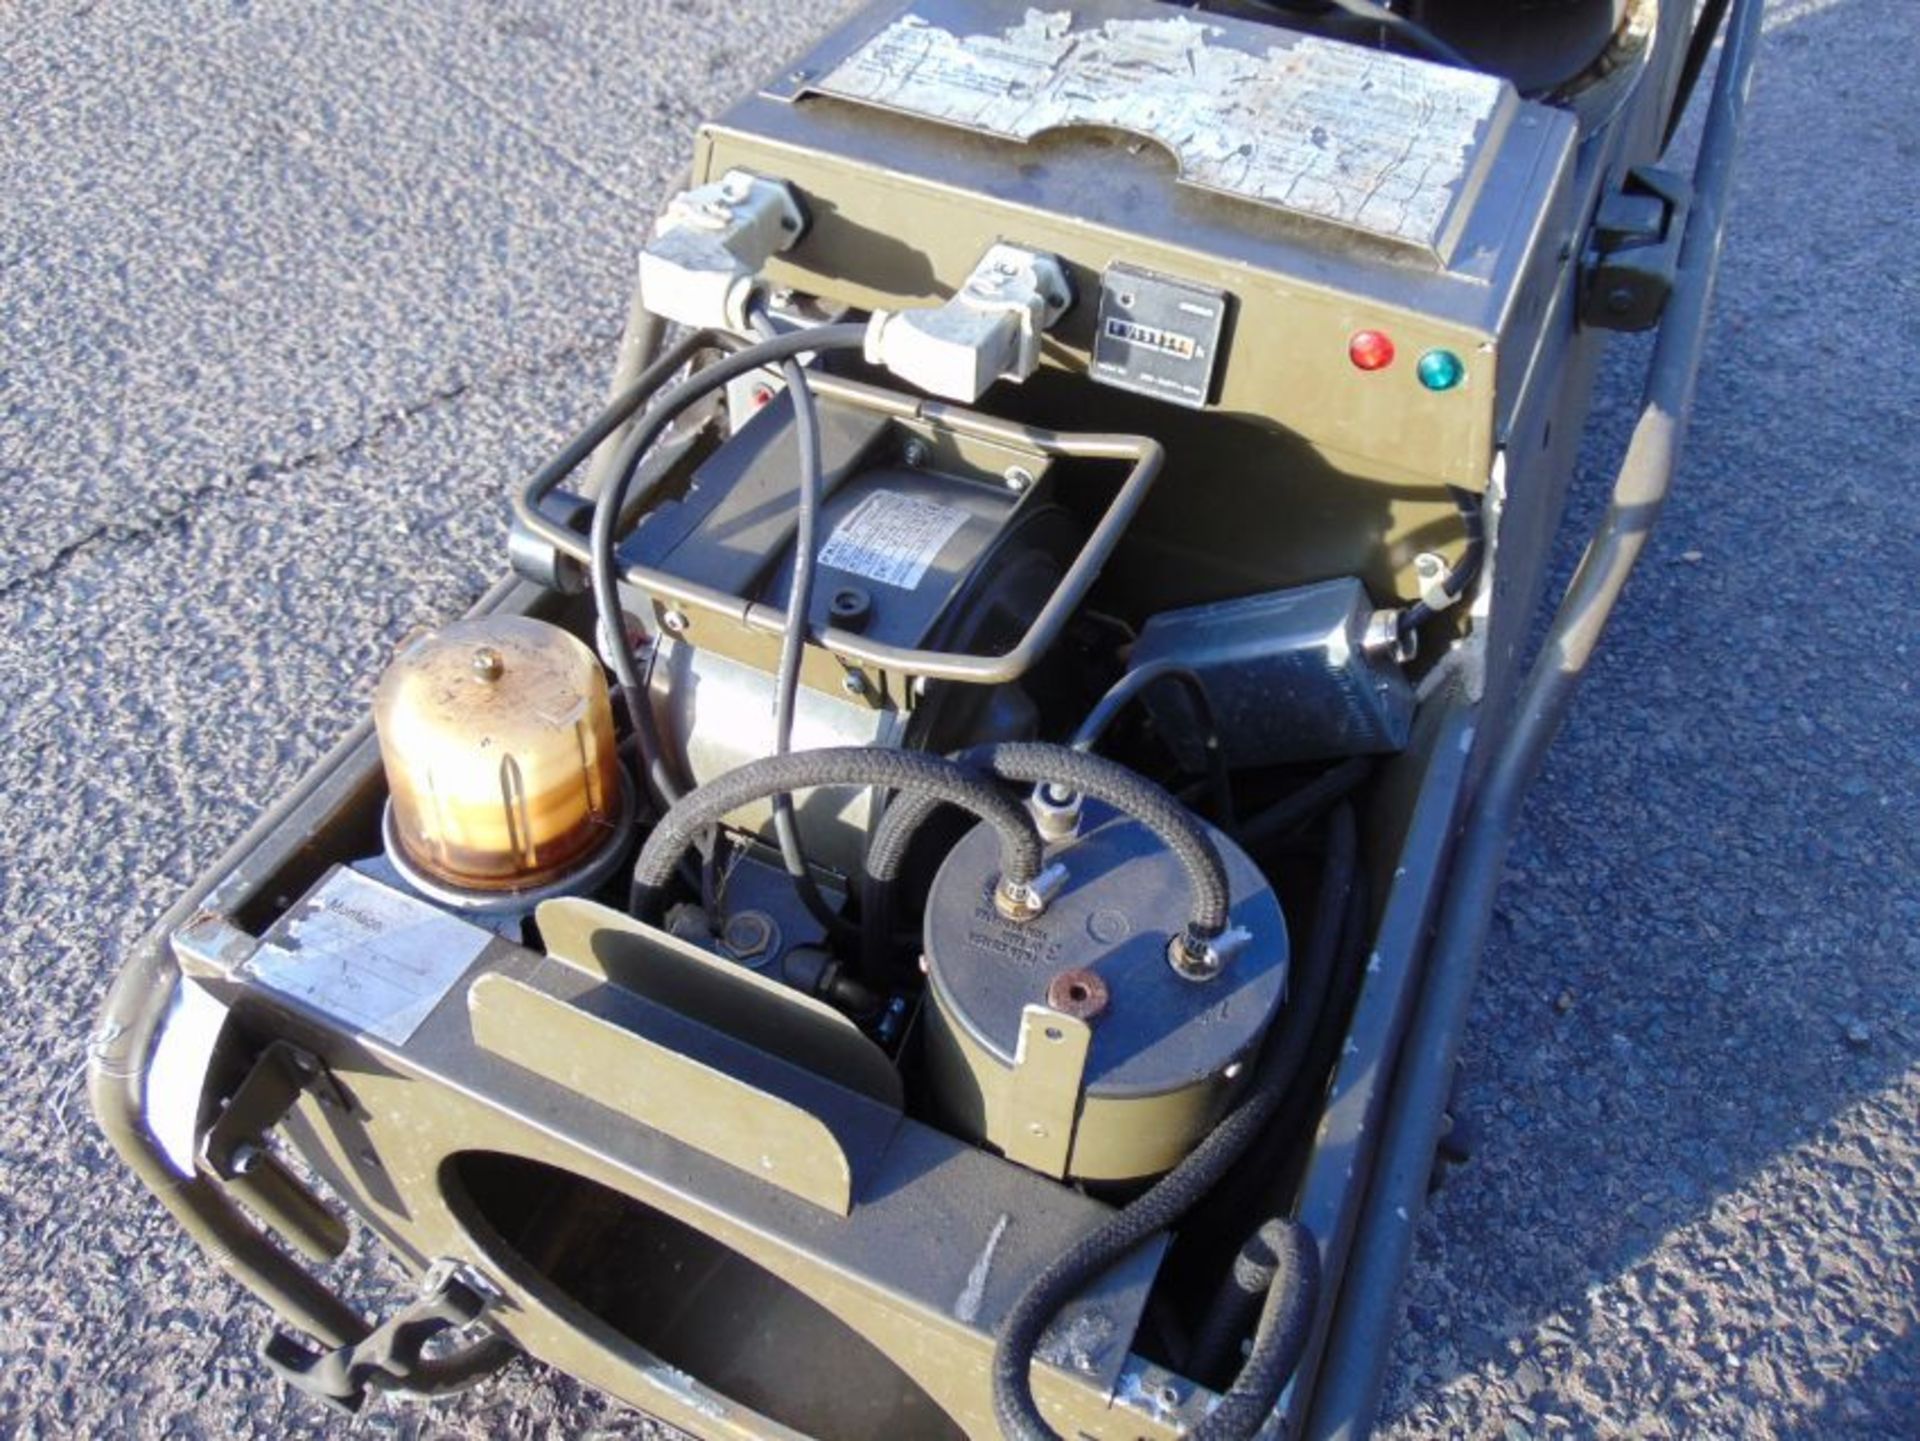 Dantherm VAM-15 Workshop oil/kero/diesel heater c/w fittings as shown - Image 6 of 8